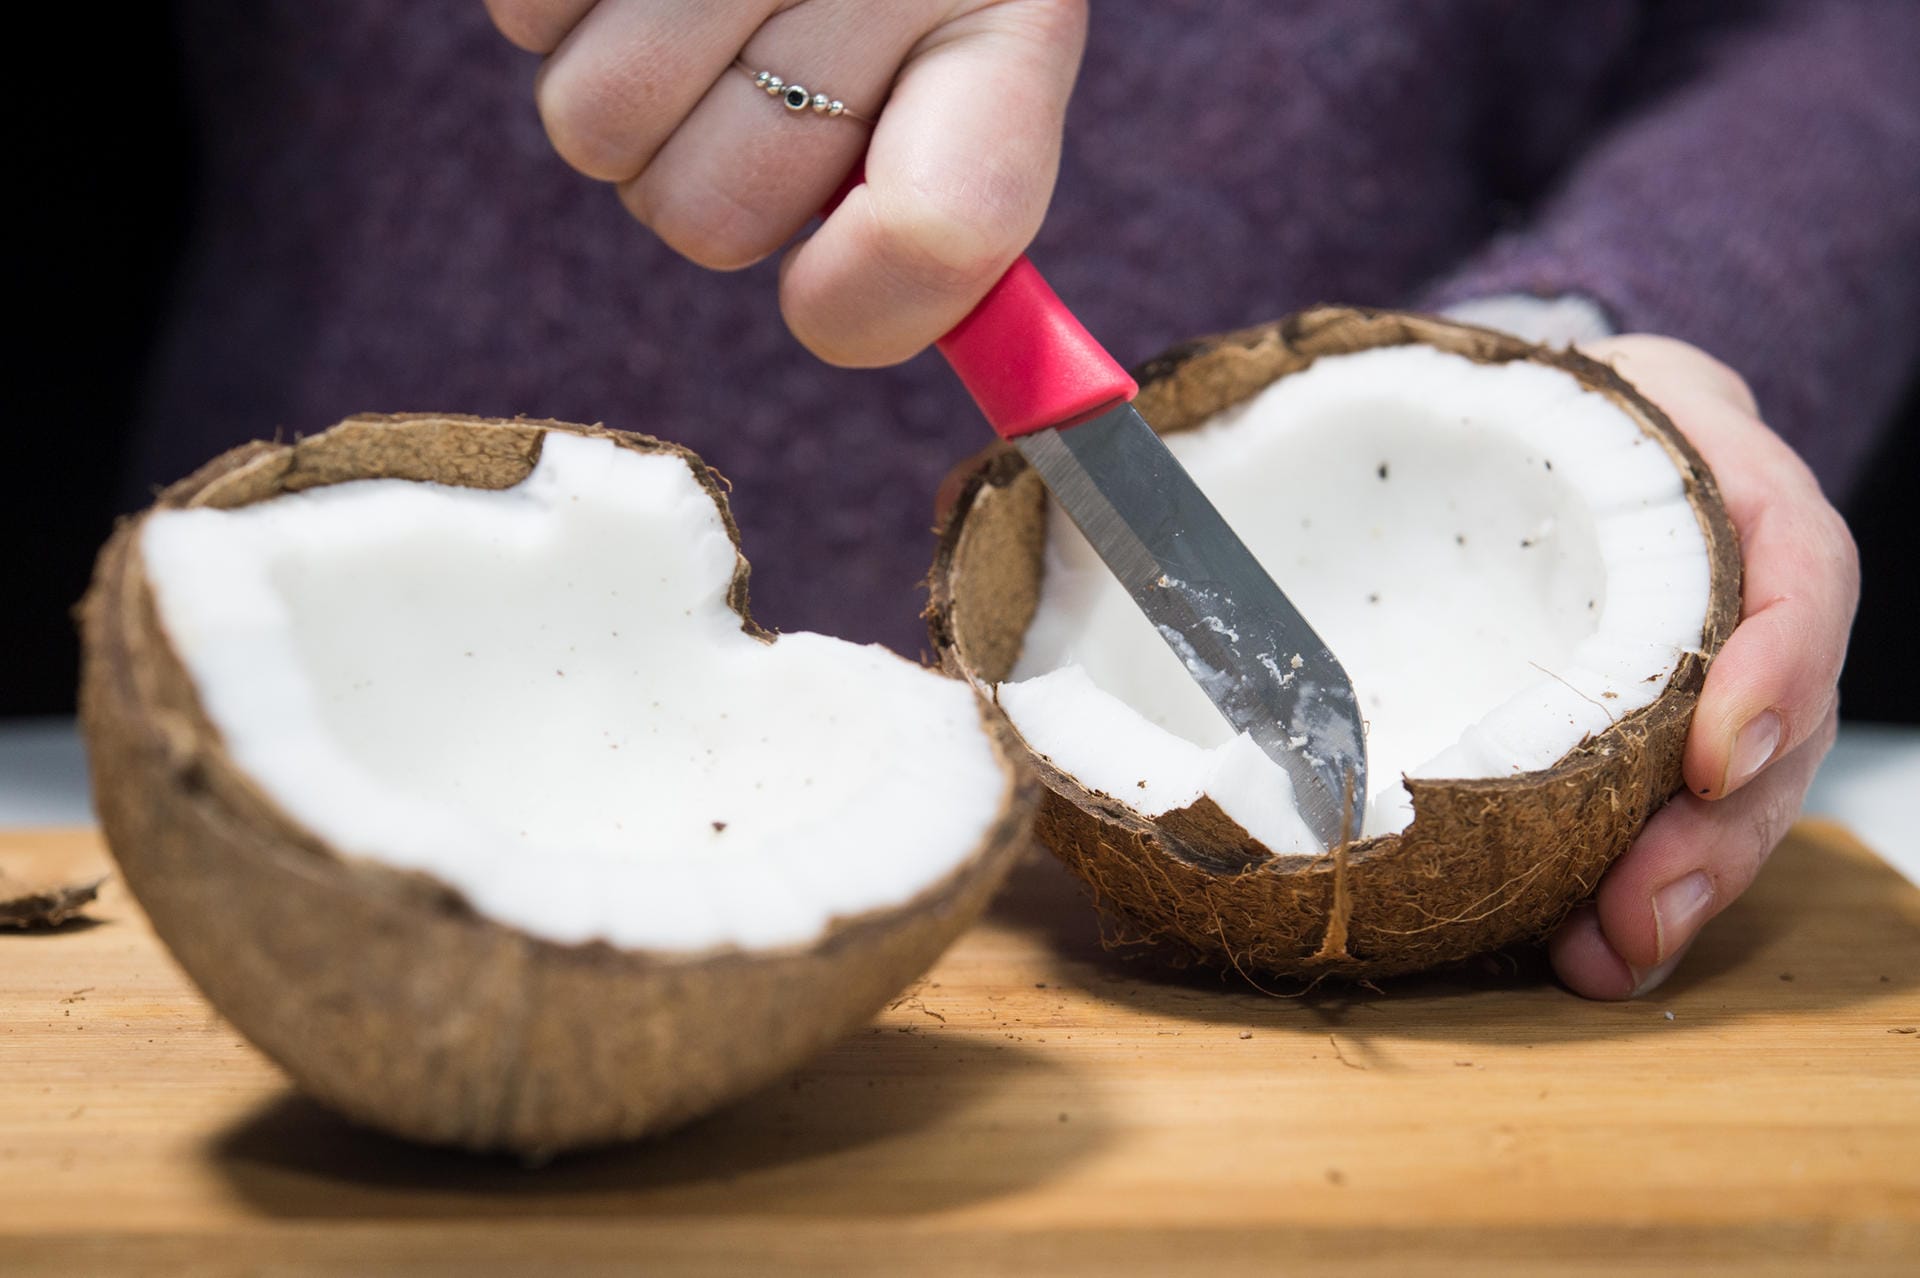 Kokosnuss: Schritt 6 – Mit einem Messer vorsichtig das weiße Fruchtfleisch herausschneiden.